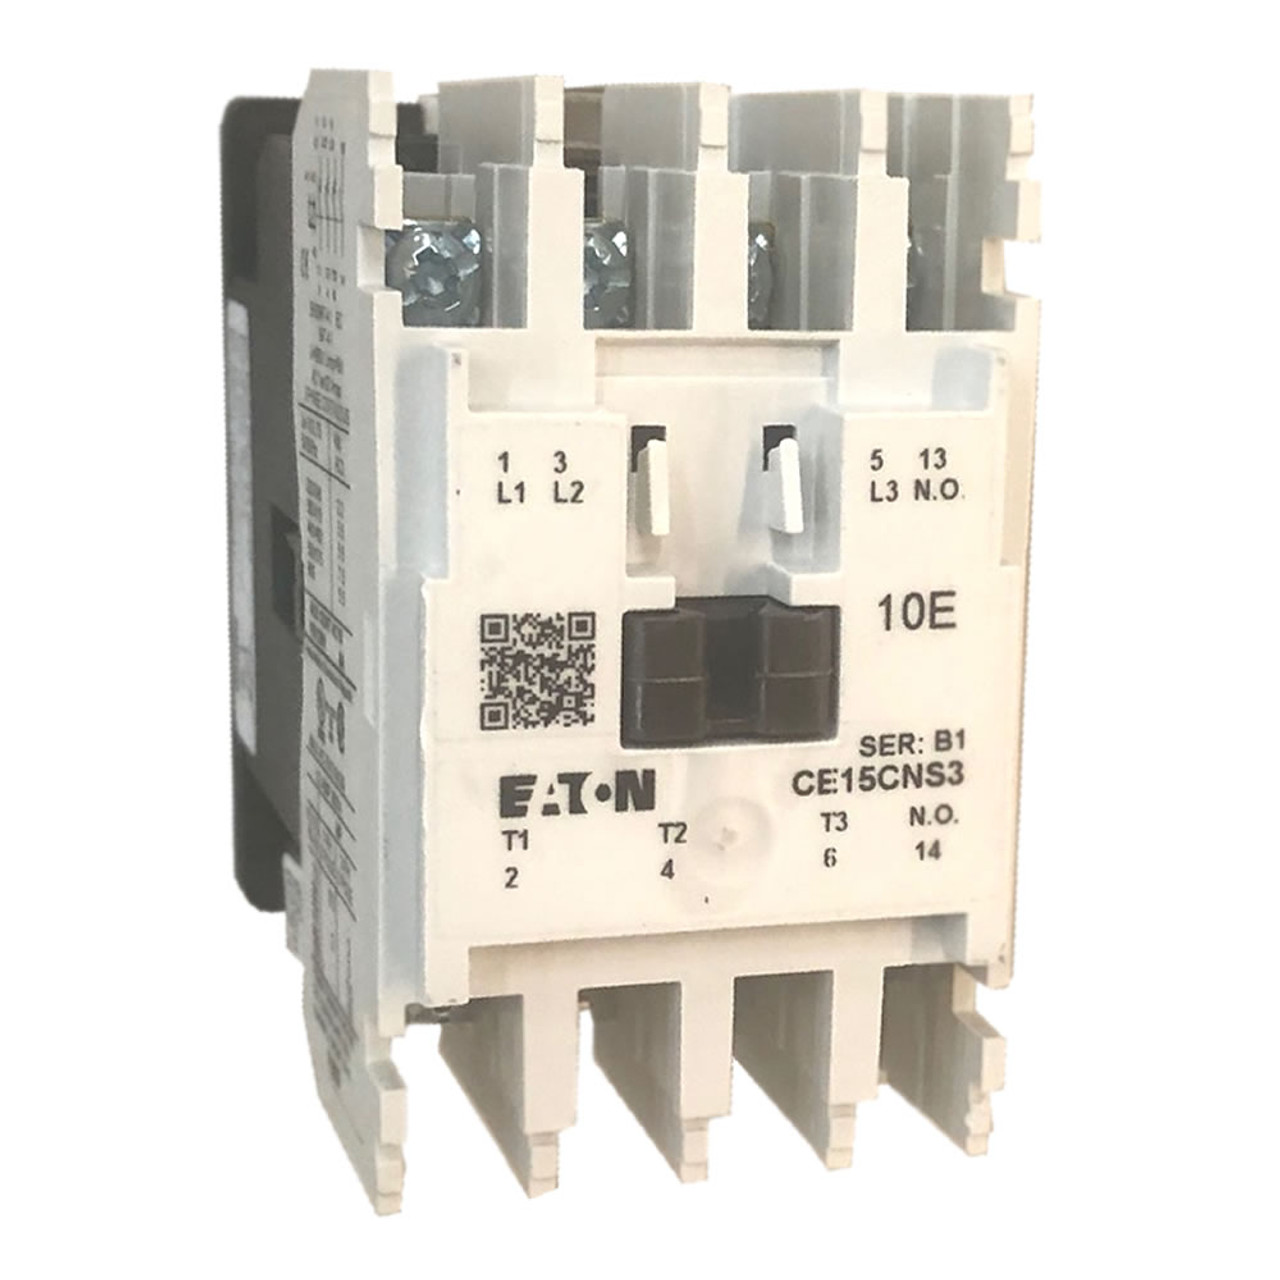 Eaton CE15CNS3 IEC contactor